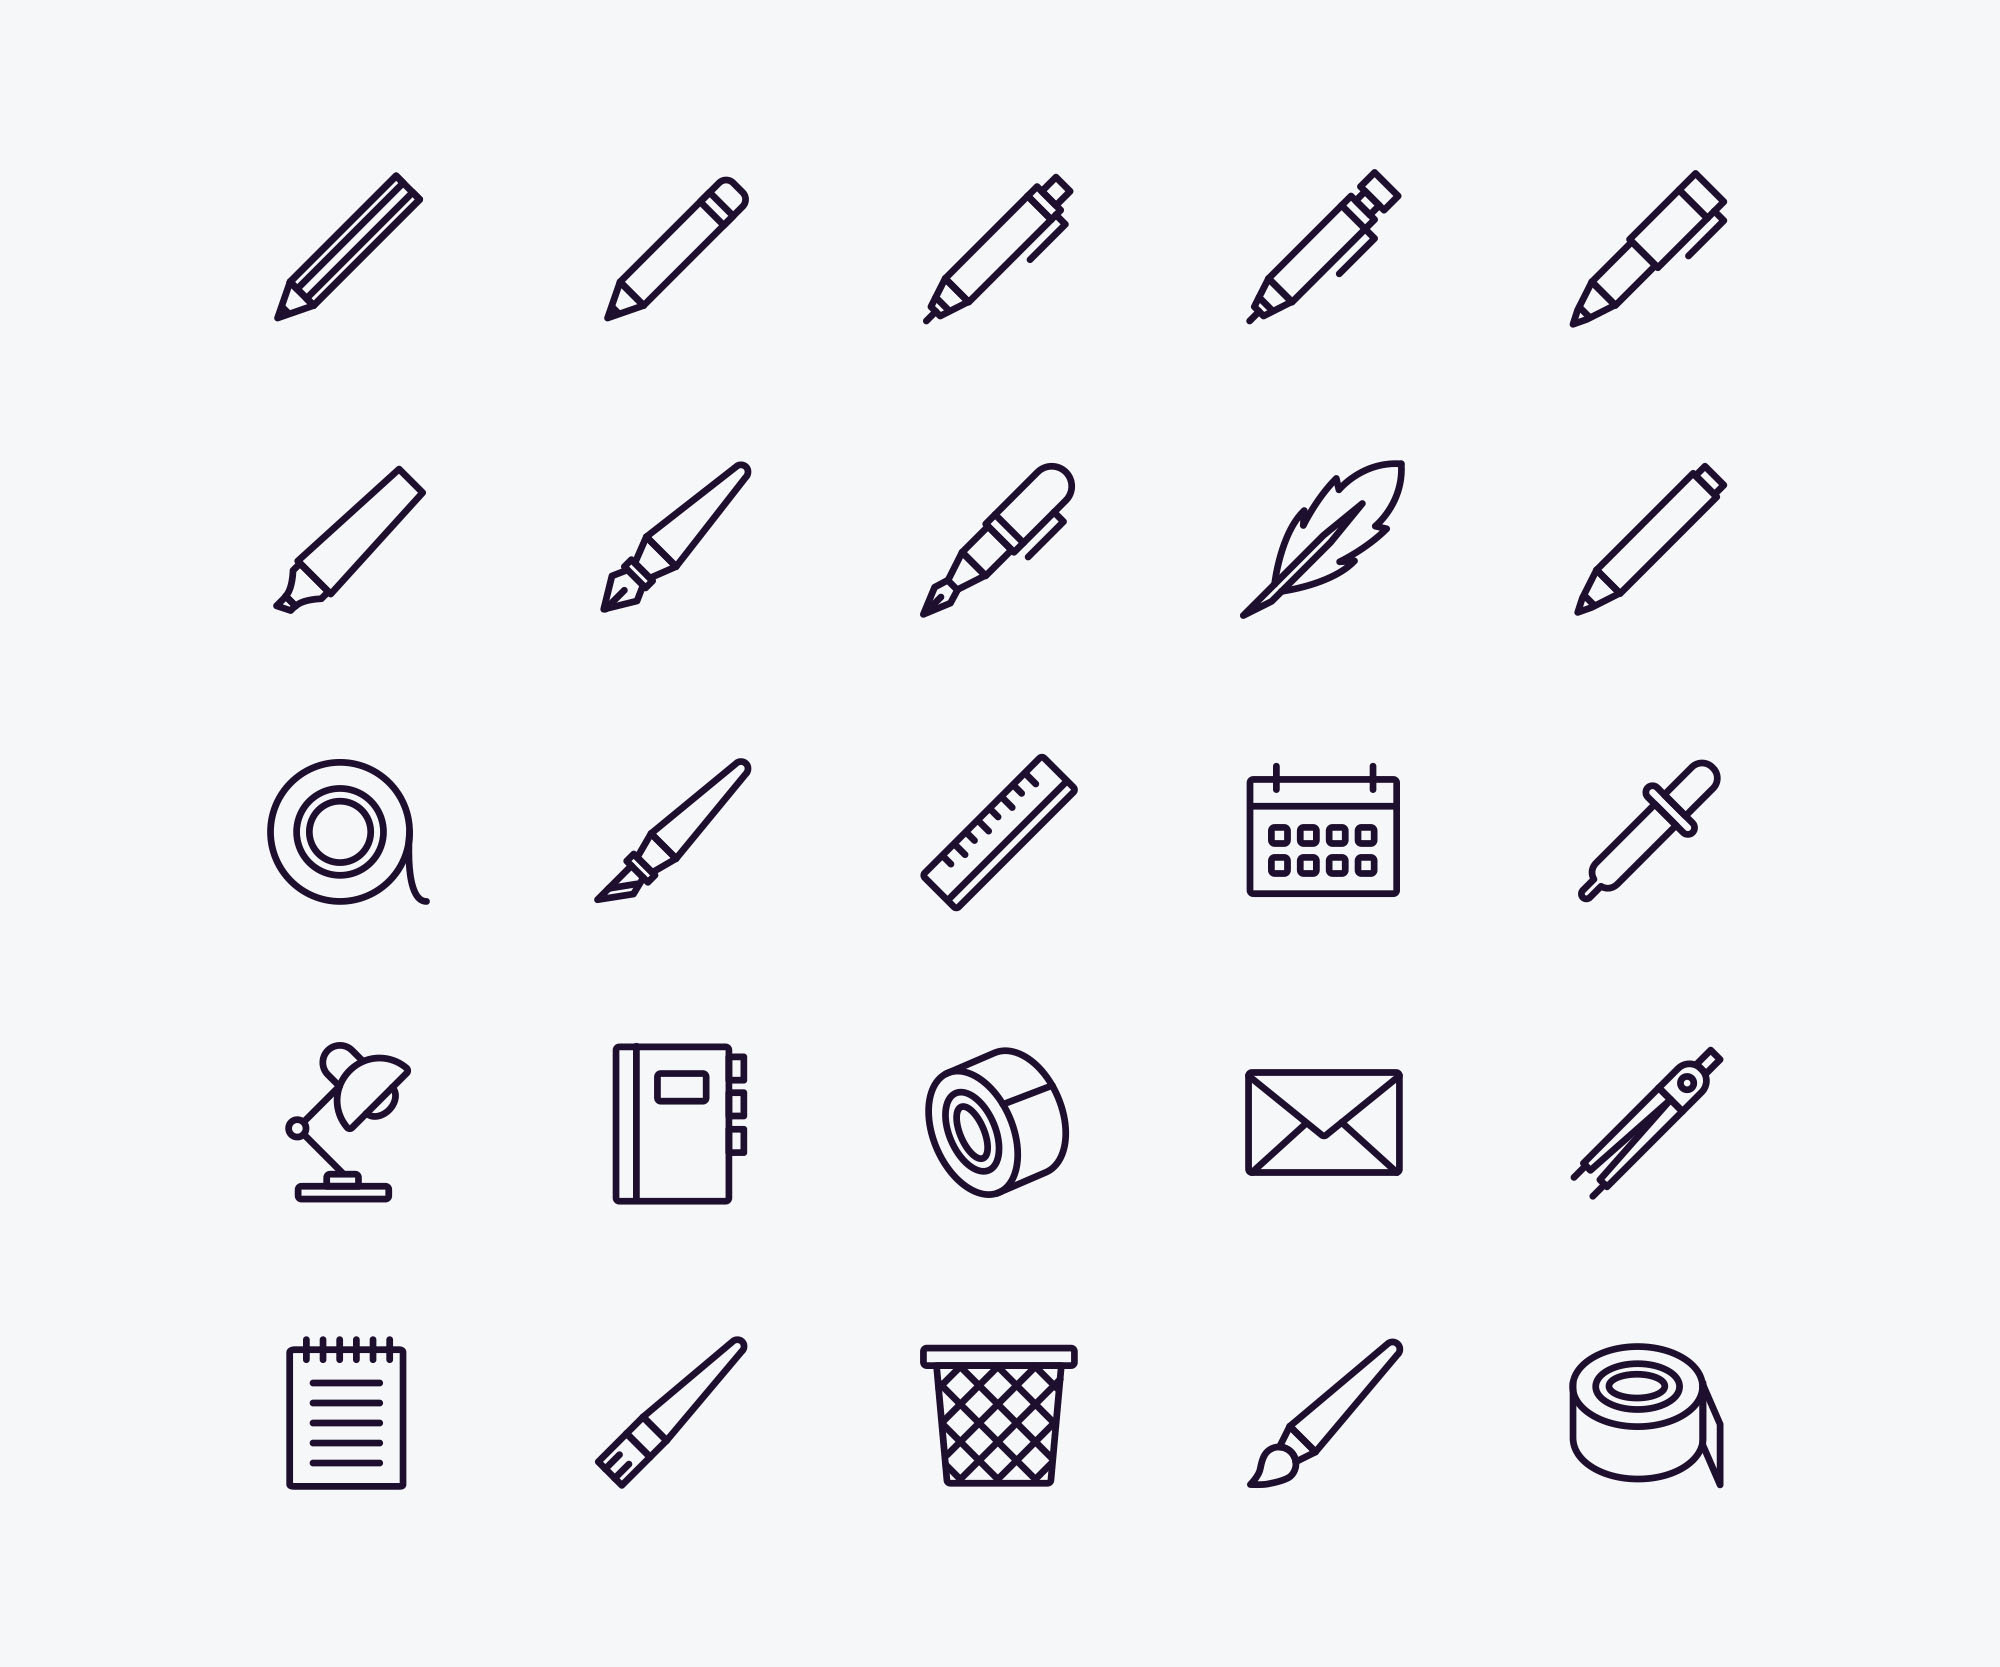 办公用品矢量图标素材 Stationery Icons Set插图